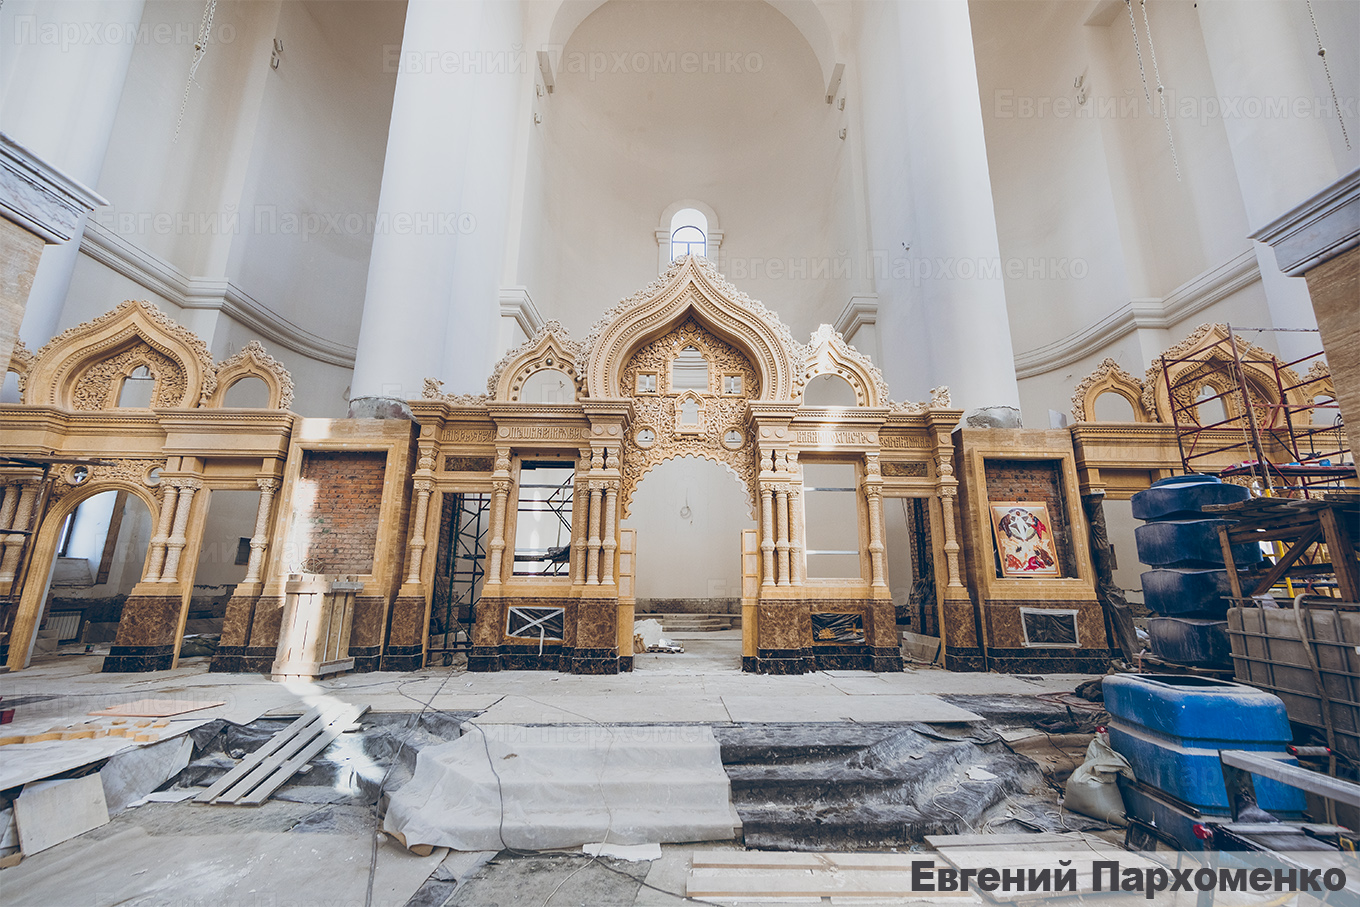 Мраморное убранство Спасо-Преображенского кафедрального собора во Владивостоке